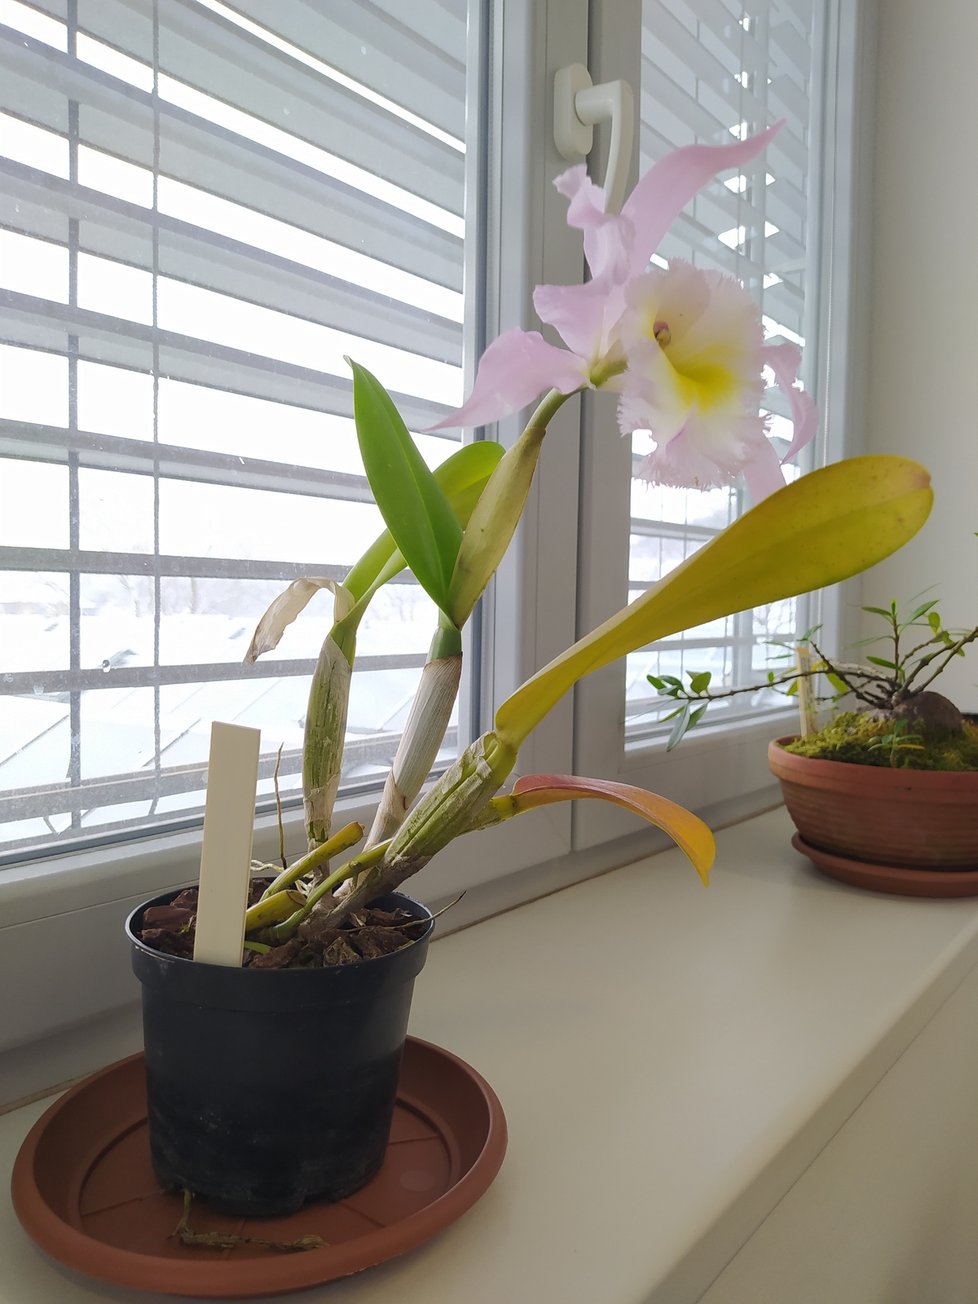 Kancelář ředitele Černého zdobí čtyři rostliny. Orchideje se obměňují podle toho, jak kvetou.